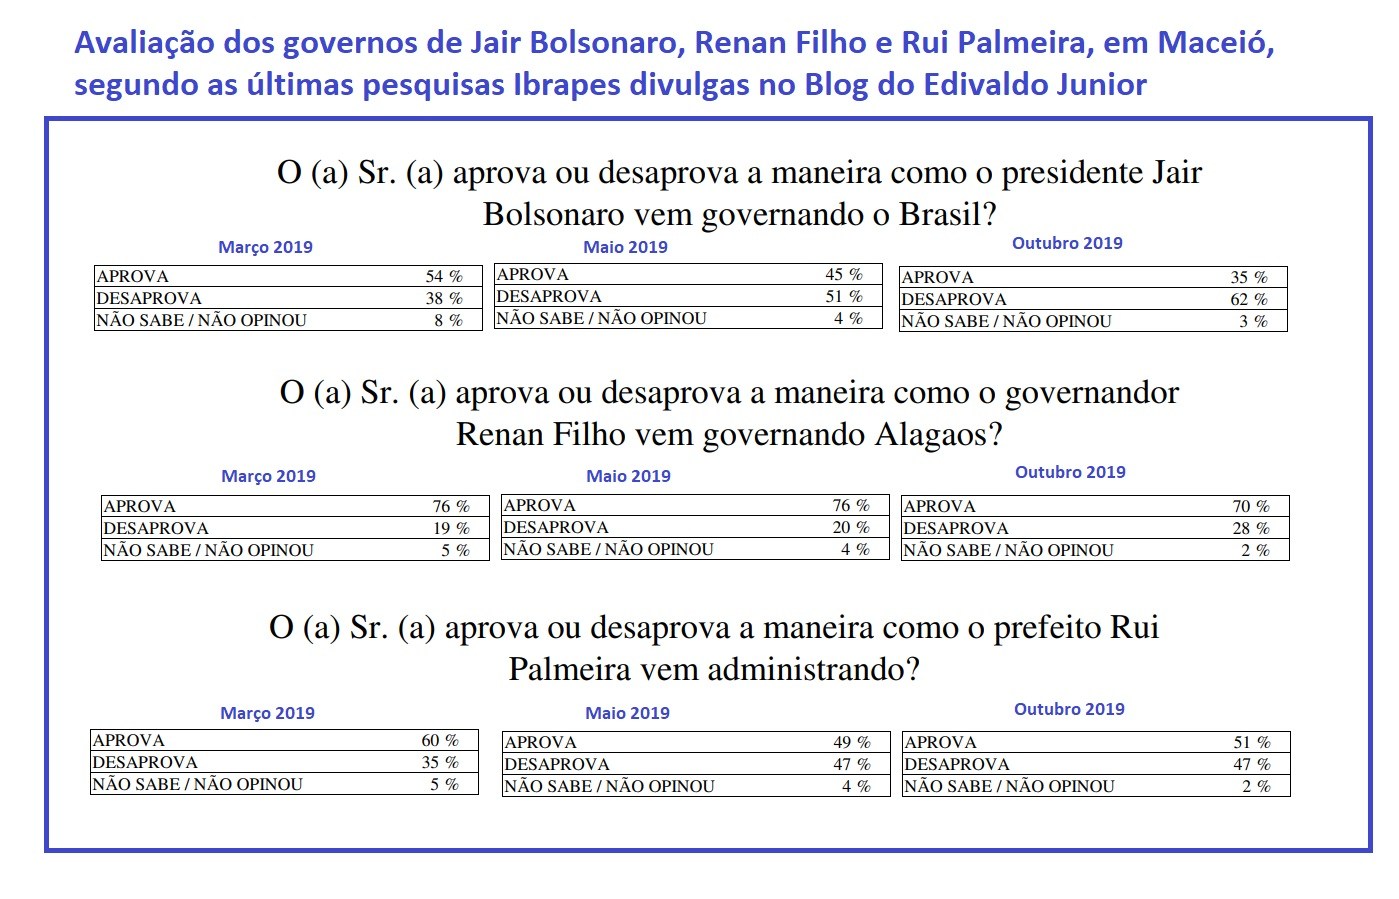 Pesquisa atesta popularidade de Renan, Rui e Bolsonaro em Maceió